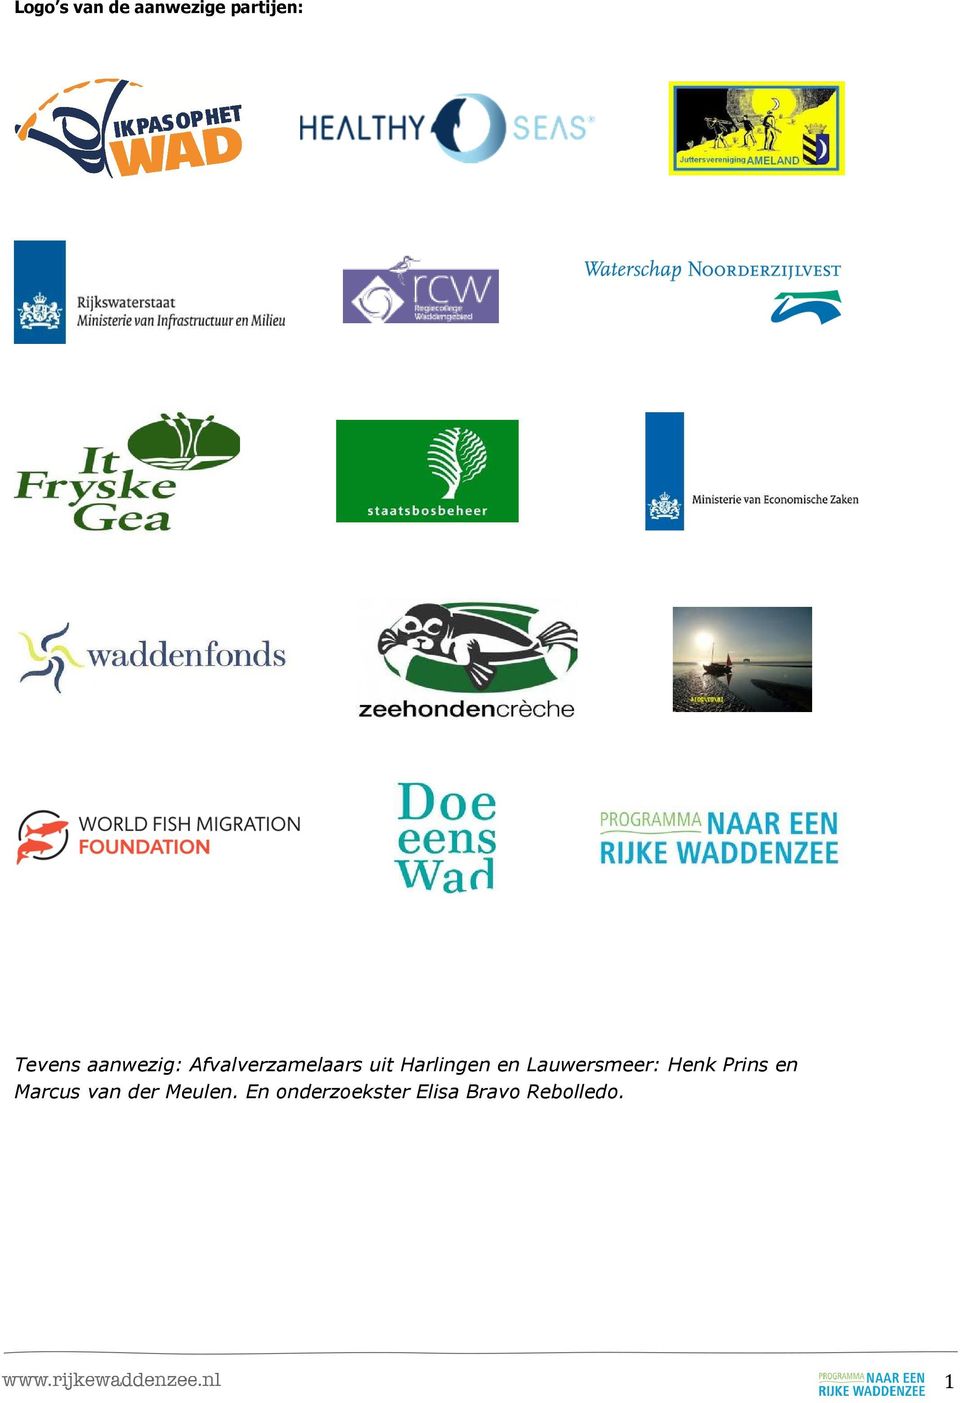 Lauwersmeer: Henk Prins en Marcus van der